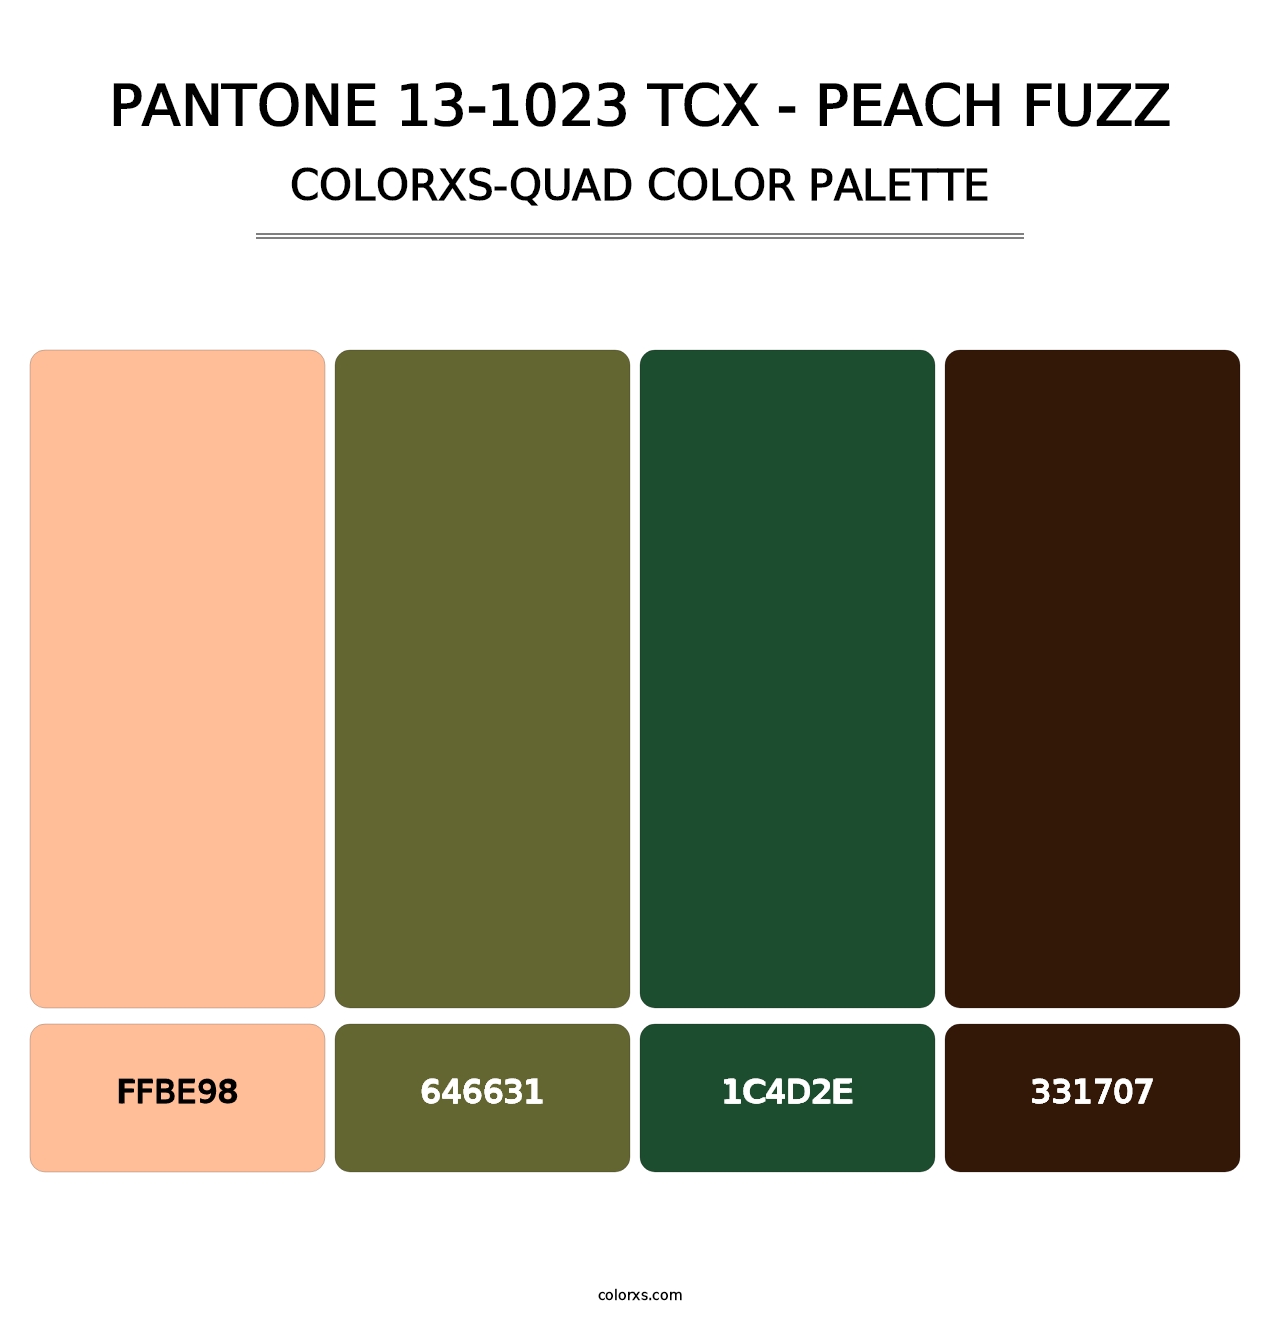 PANTONE 13-1023 TCX - Peach Fuzz - Colorxs Quad Palette